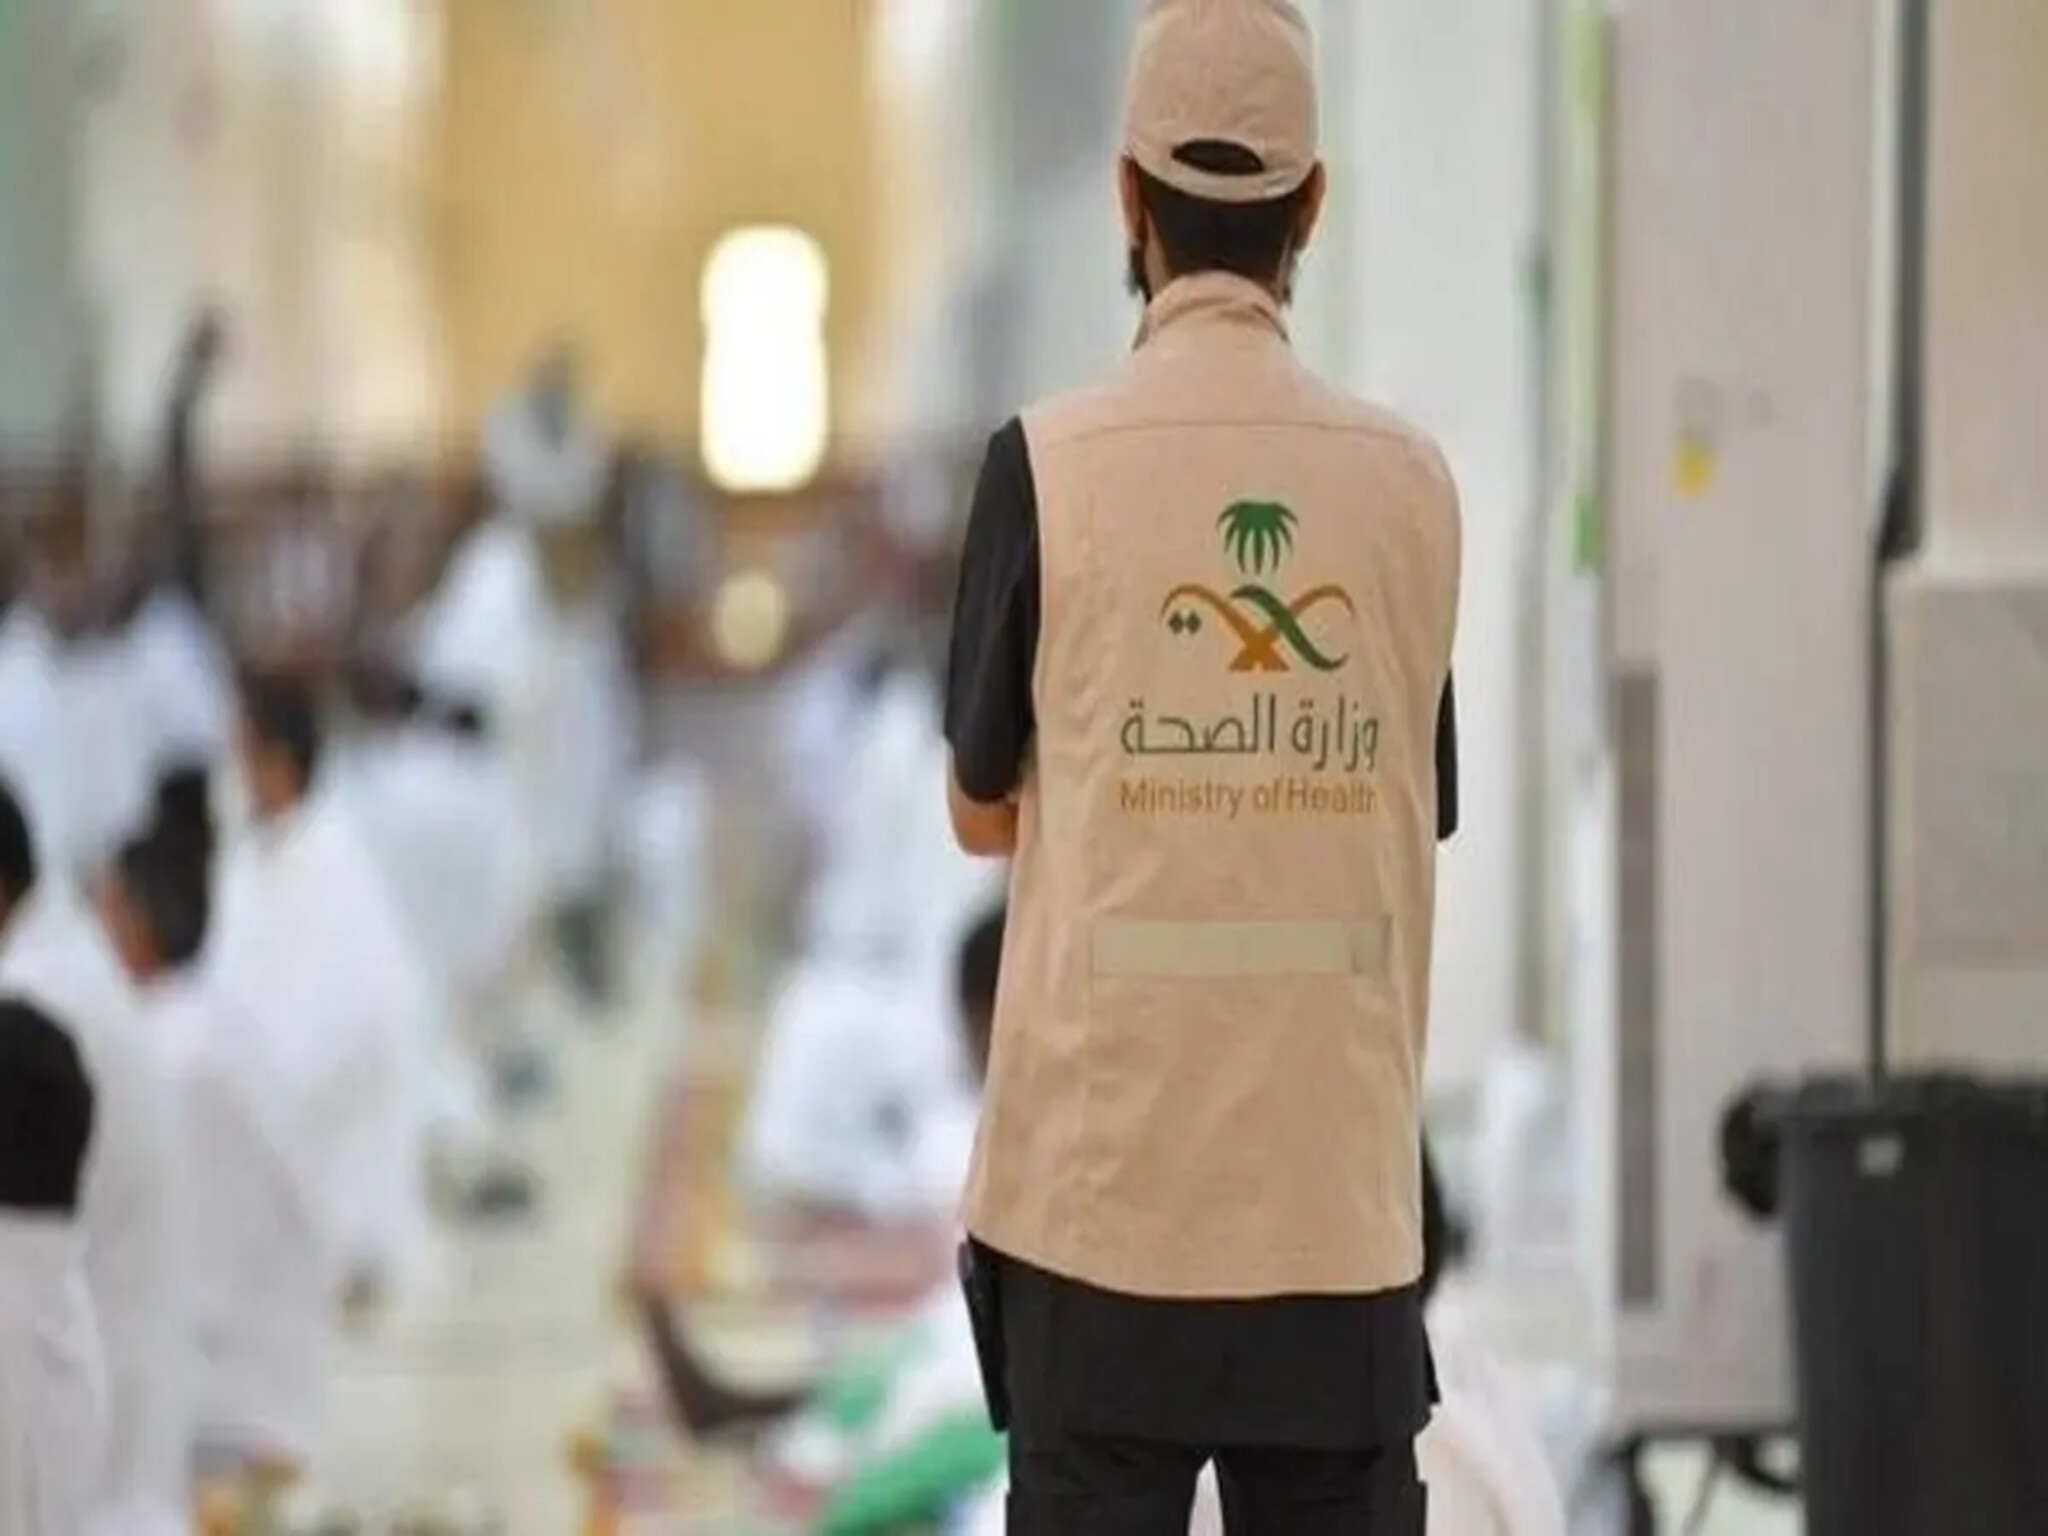 وزارة الصحة تُعلن مشاركة مستشفى صحة الافتراضي في خدمة ضيوف الرحمن في موسم الحج